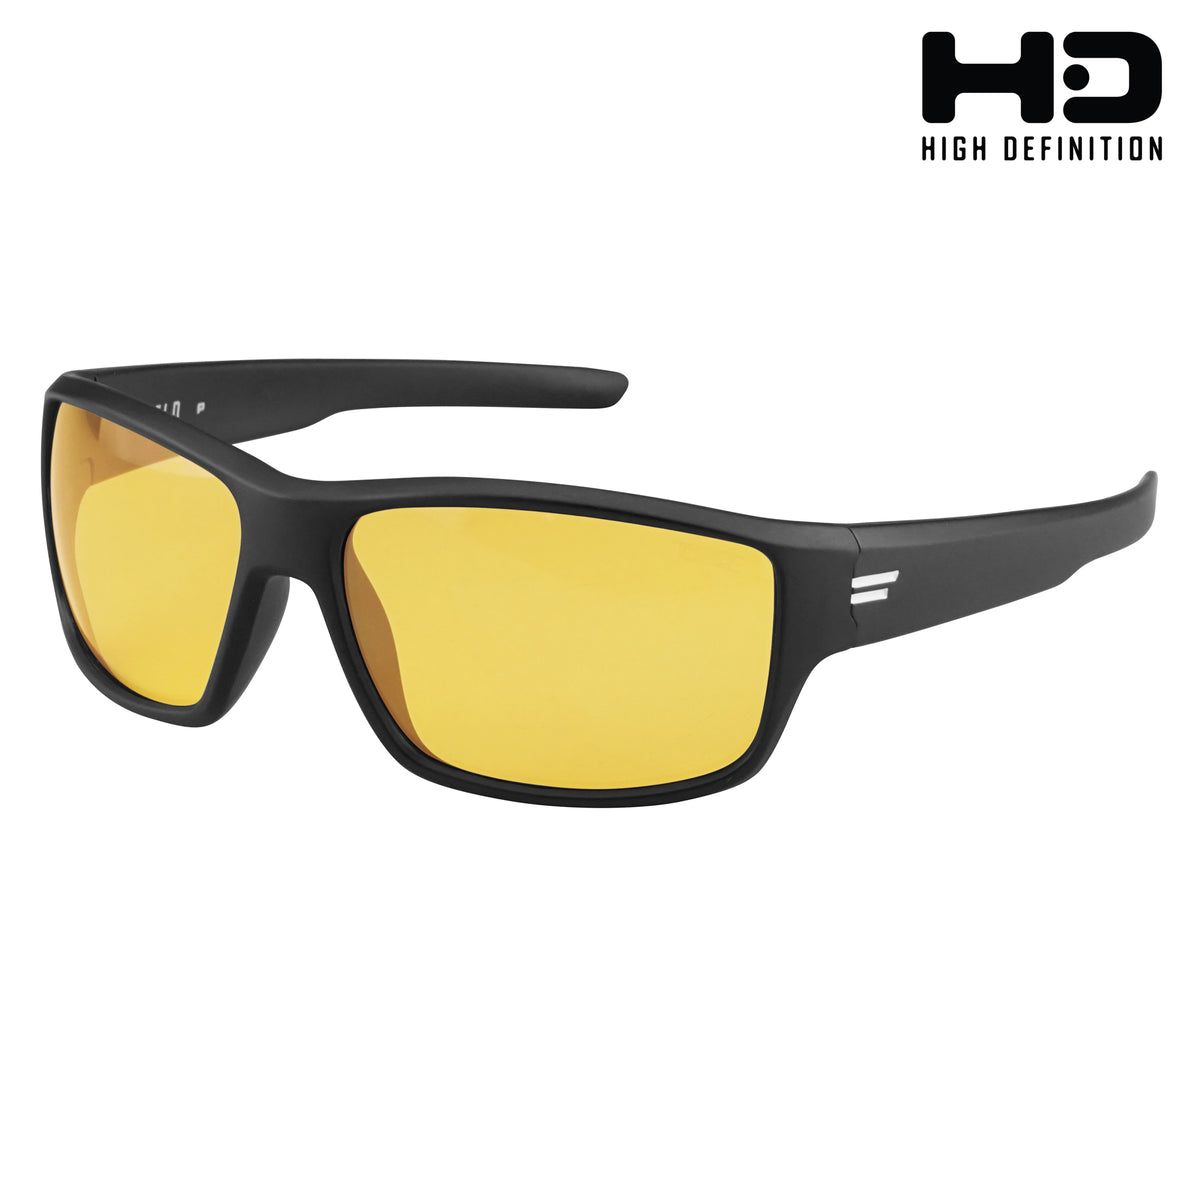 7 STYLES | BLUE LIGHT BLOCKER Sunglasses HD High Definition Driving Golf  Tennis 